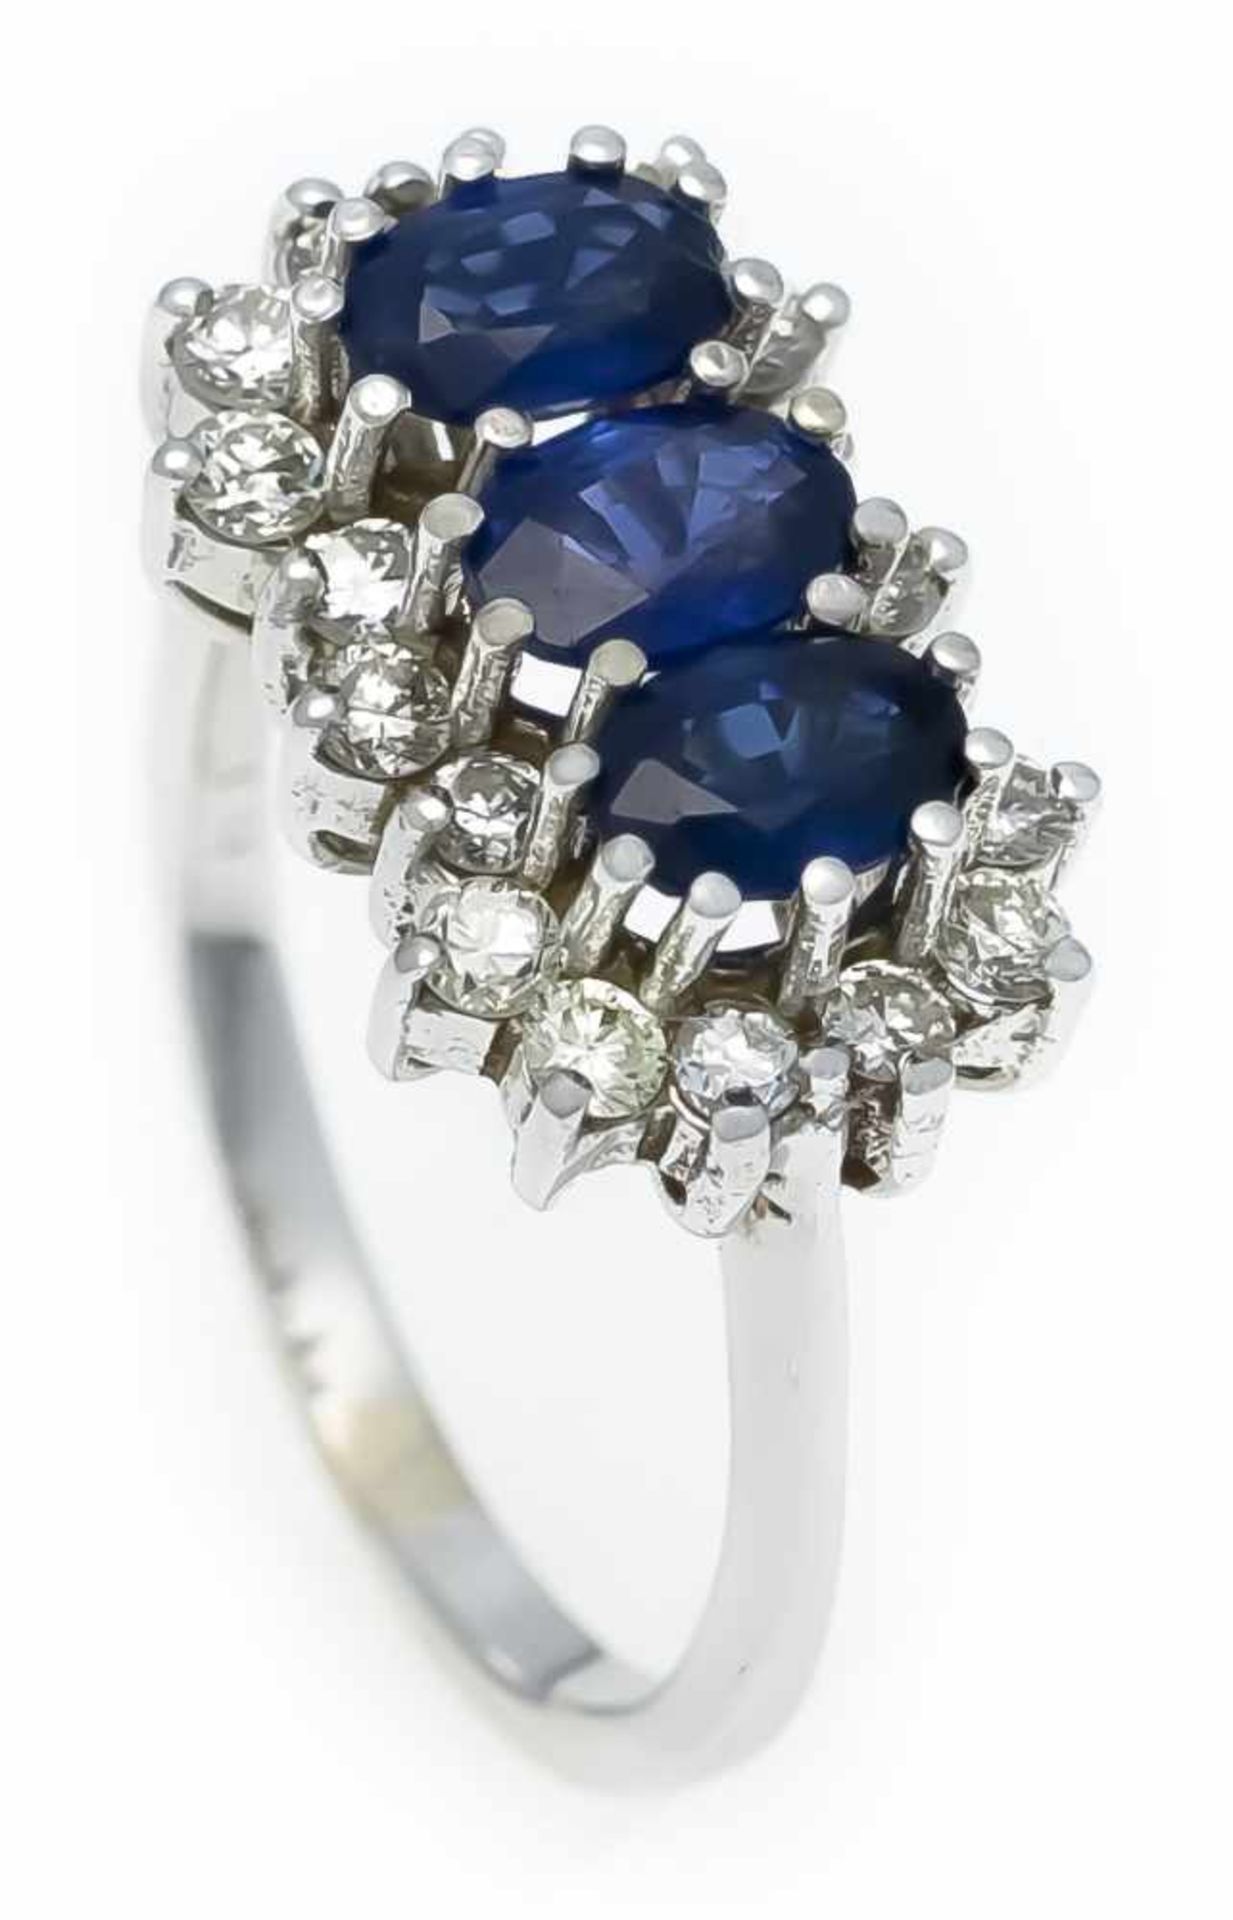 Saphir-Brillant-Ring WG 585/000 mit 3 oval fac. Saphiren 6 x 4 mm in guter Farbe und 18Brillanten,